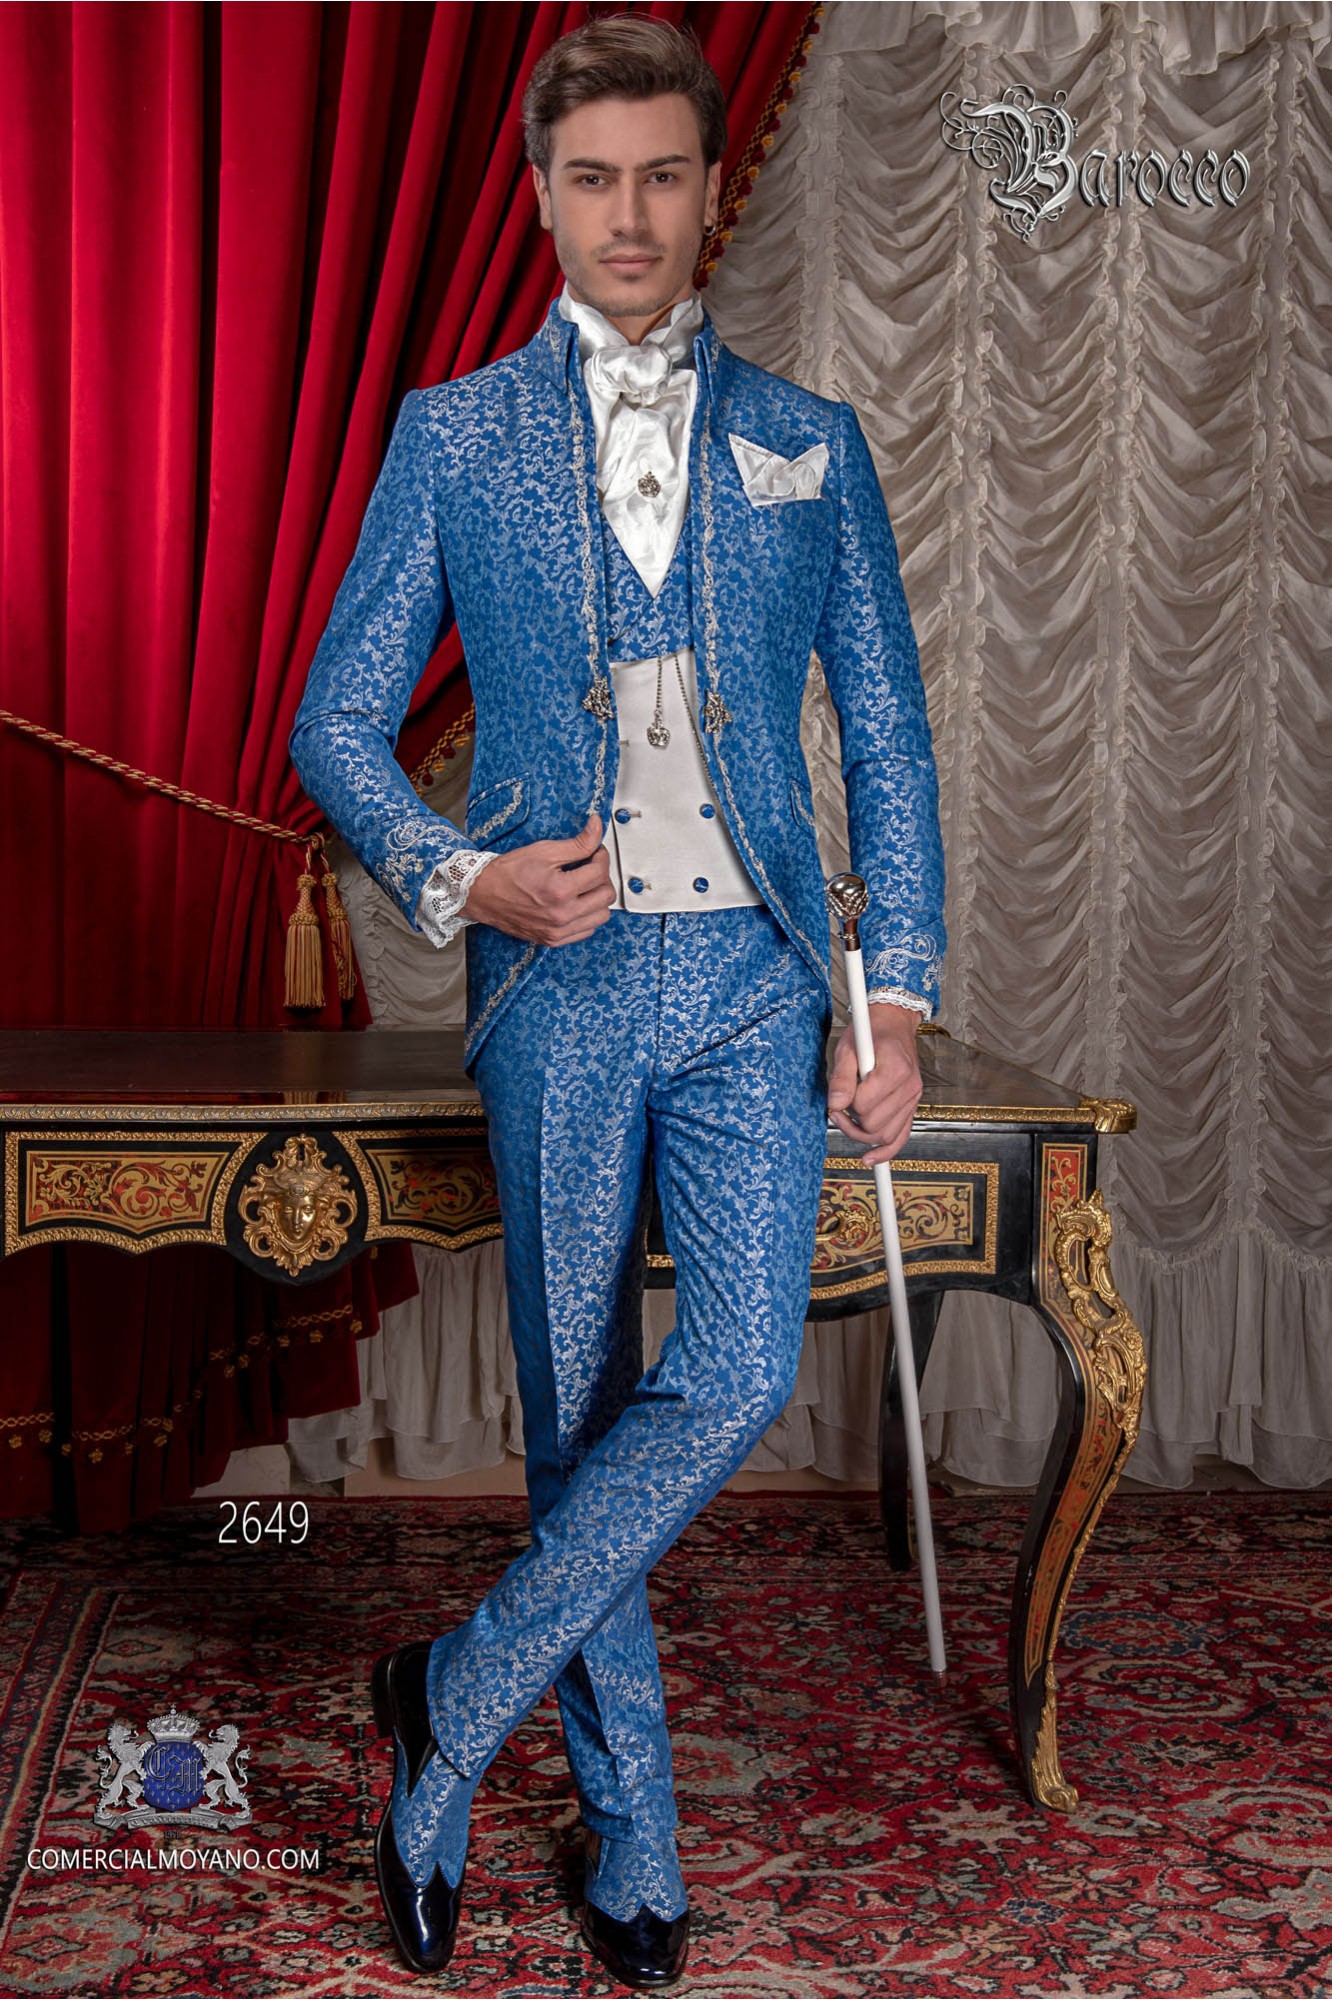 Traje de novio barroco, levita de época cuello Napoleón en tejido jacquard azul y plata con bordados plateados modelo: 2649 Mario Moyano colección Barroco